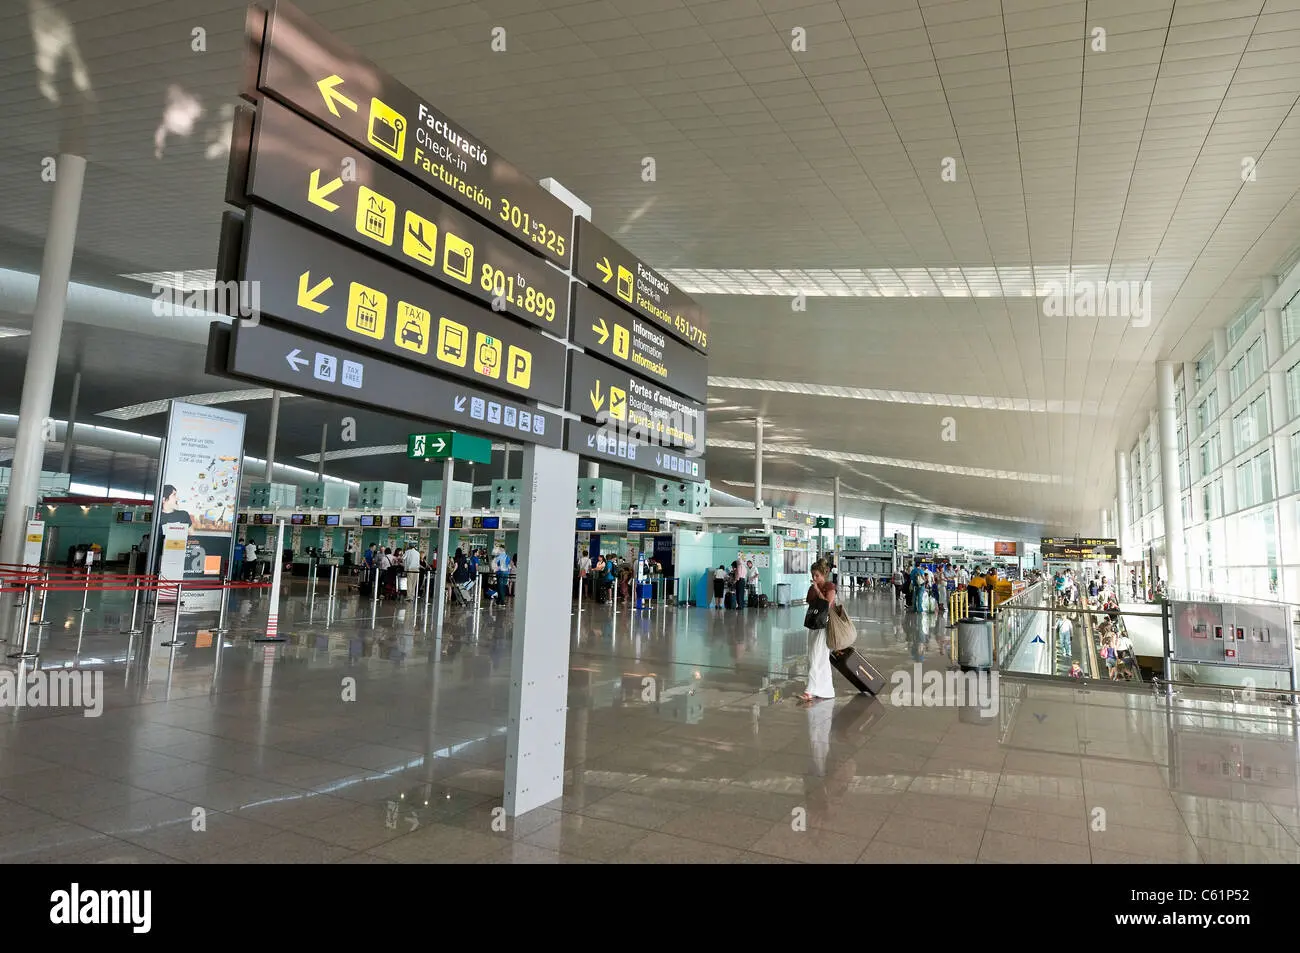 aeropuerto barcelona t1 fotocopias - Cómo se llama el aeropuerto de Madrid